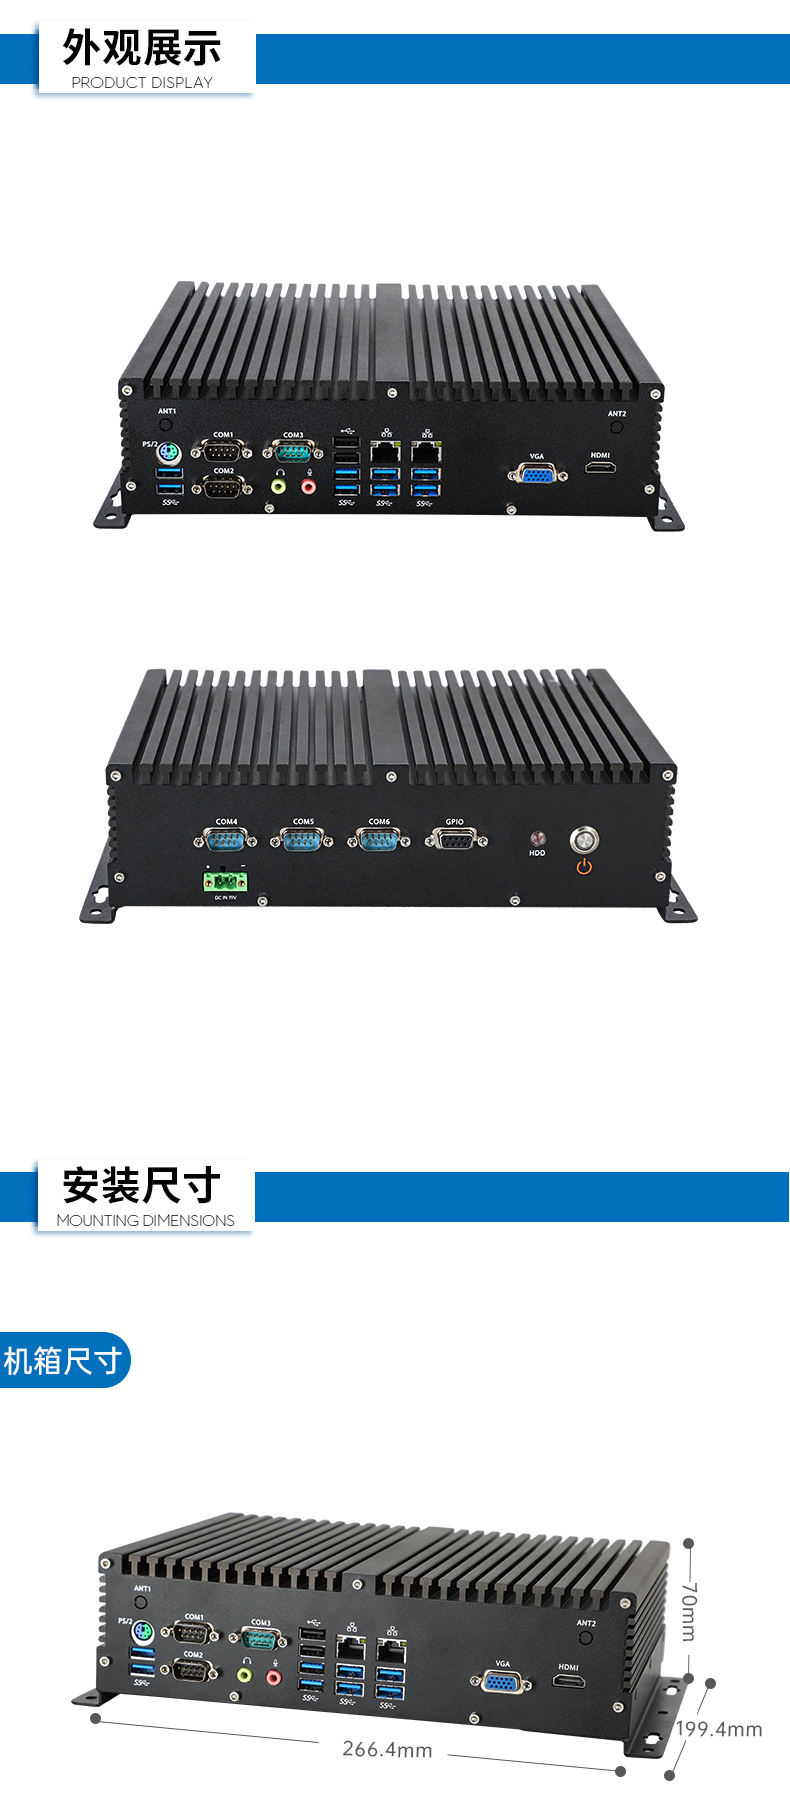 国产化桌面式工控机,无风扇嵌入式主机,DTB-3082-D2000.jpg